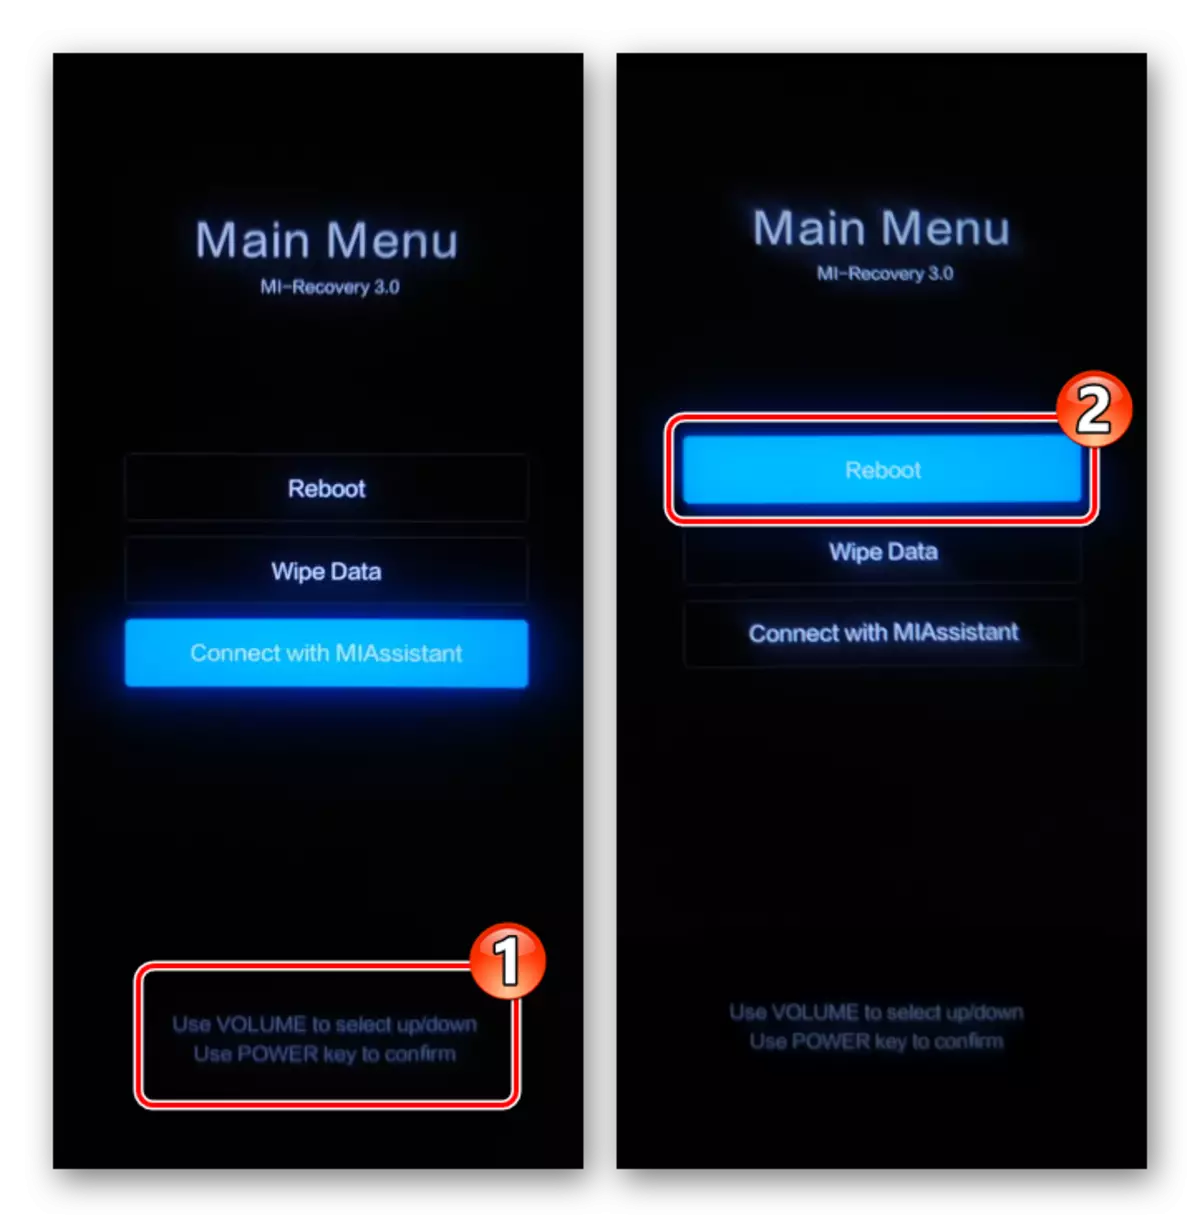 Xiaomi Miui Hoofdmenu (Factory Recovery) - Bediening met behulp van hardware-knoppen - Selecteer Reboot-functie